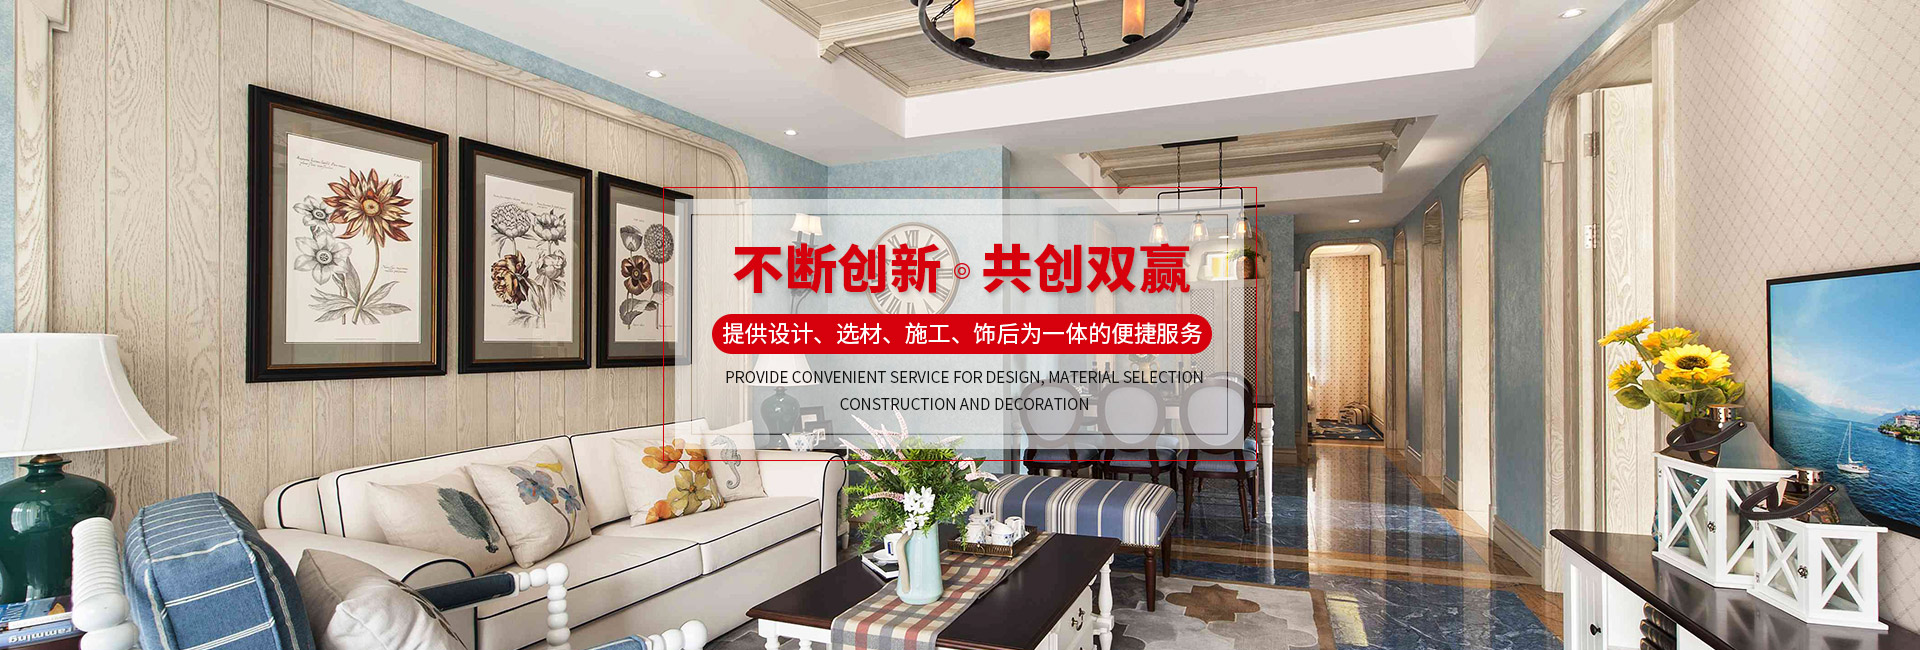 上海云之飛建筑裝飾工程有限公司